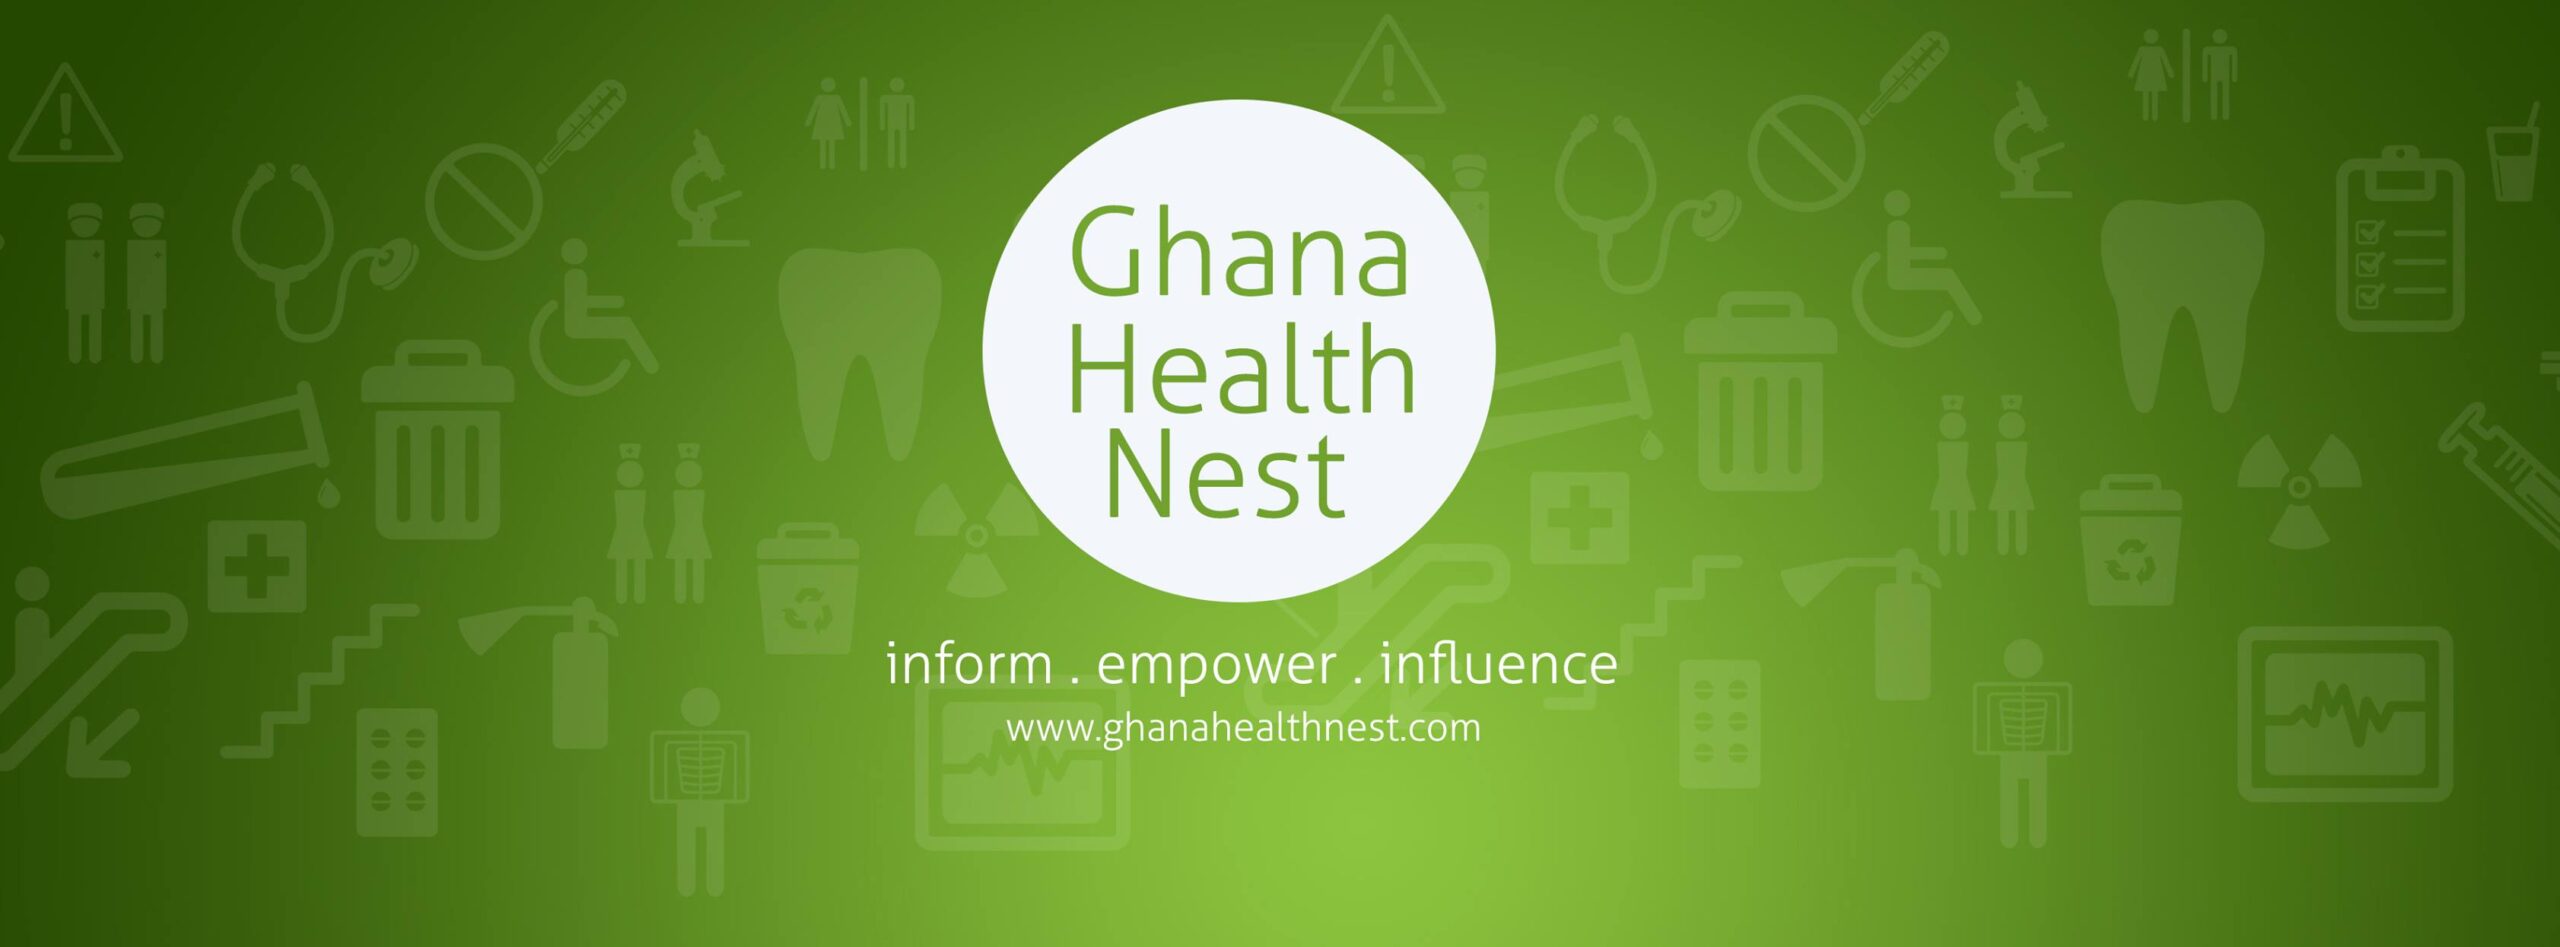 Ghana Health Nest